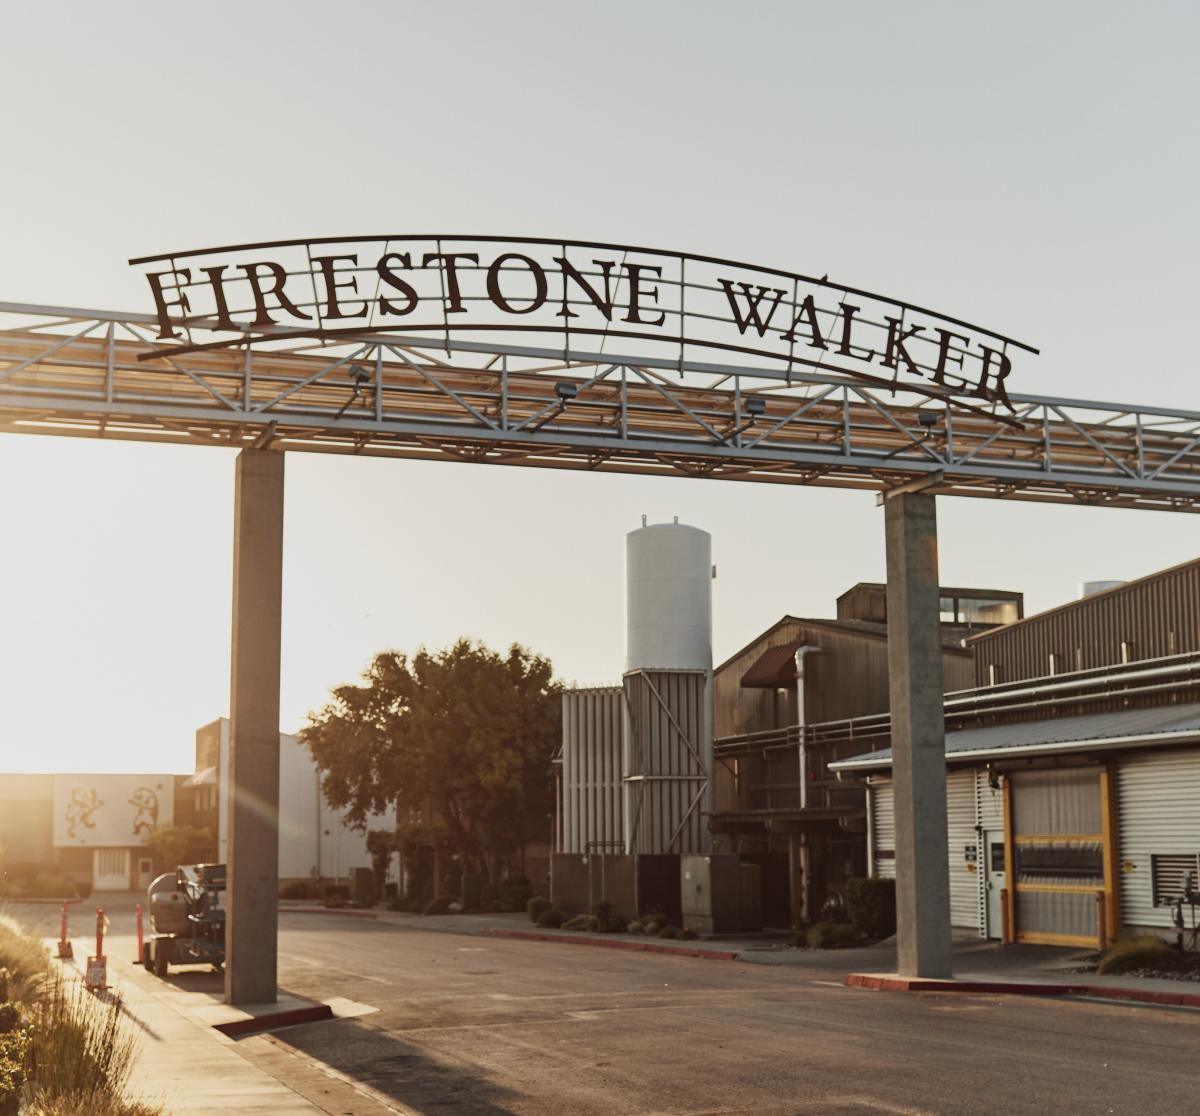 Firestone Walker Brewery